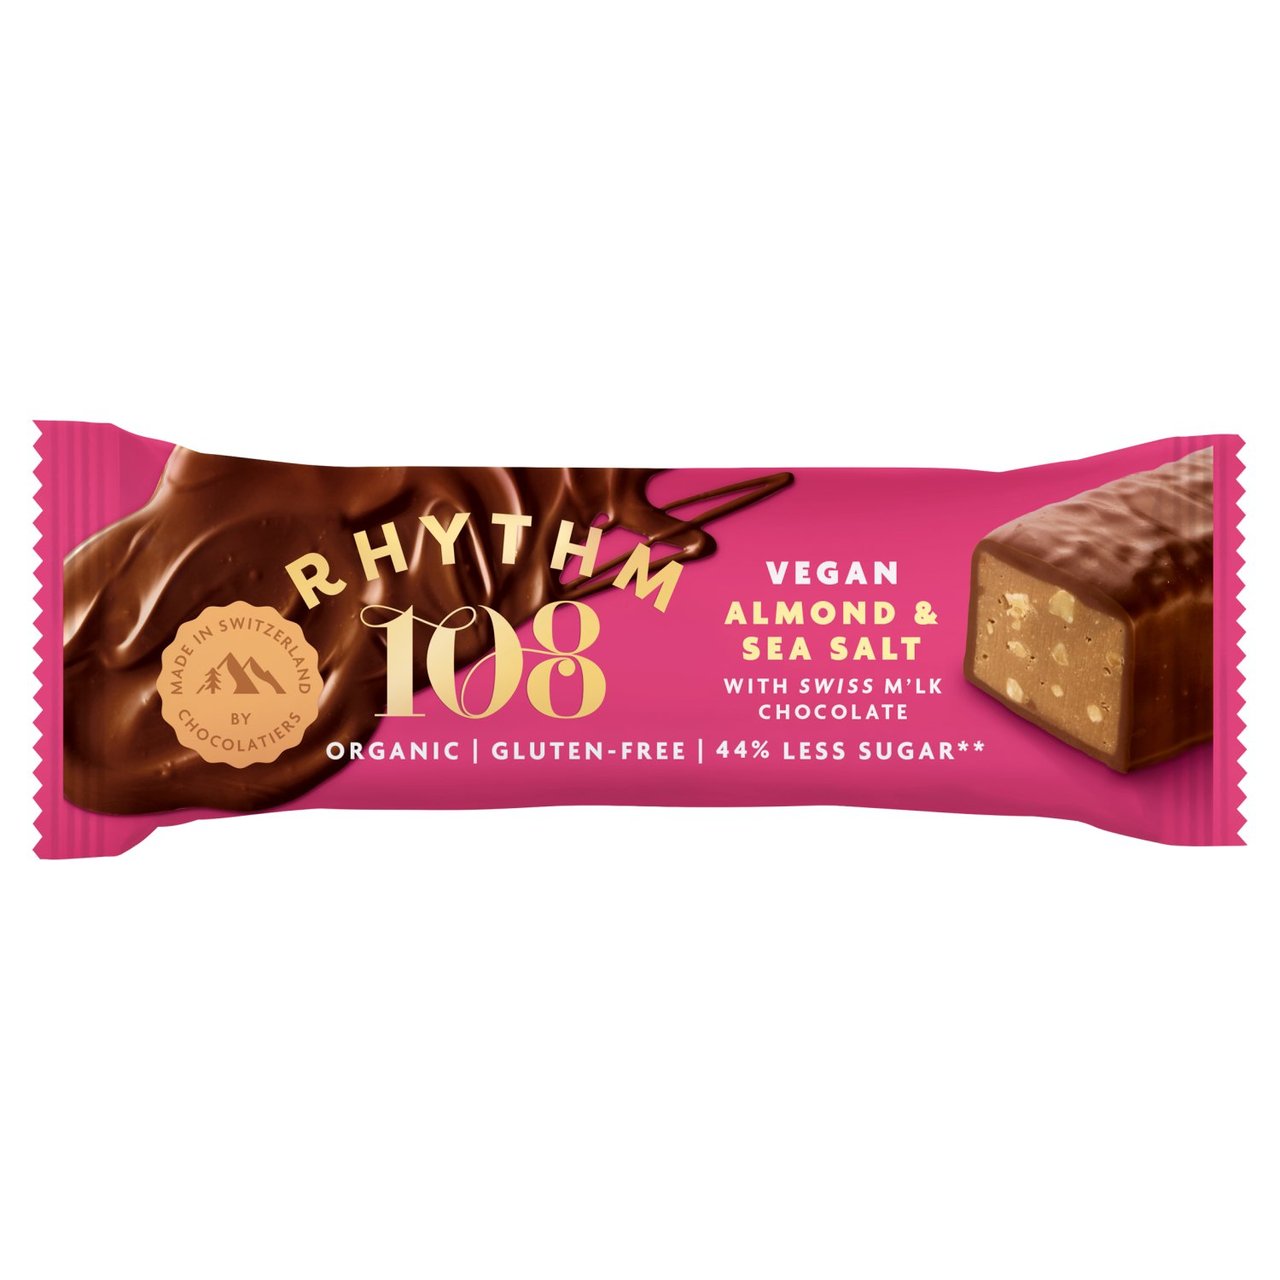 Rhythm 108 Sweet 'n' Salty Almond Chocolate Bar 33g (case of 15)